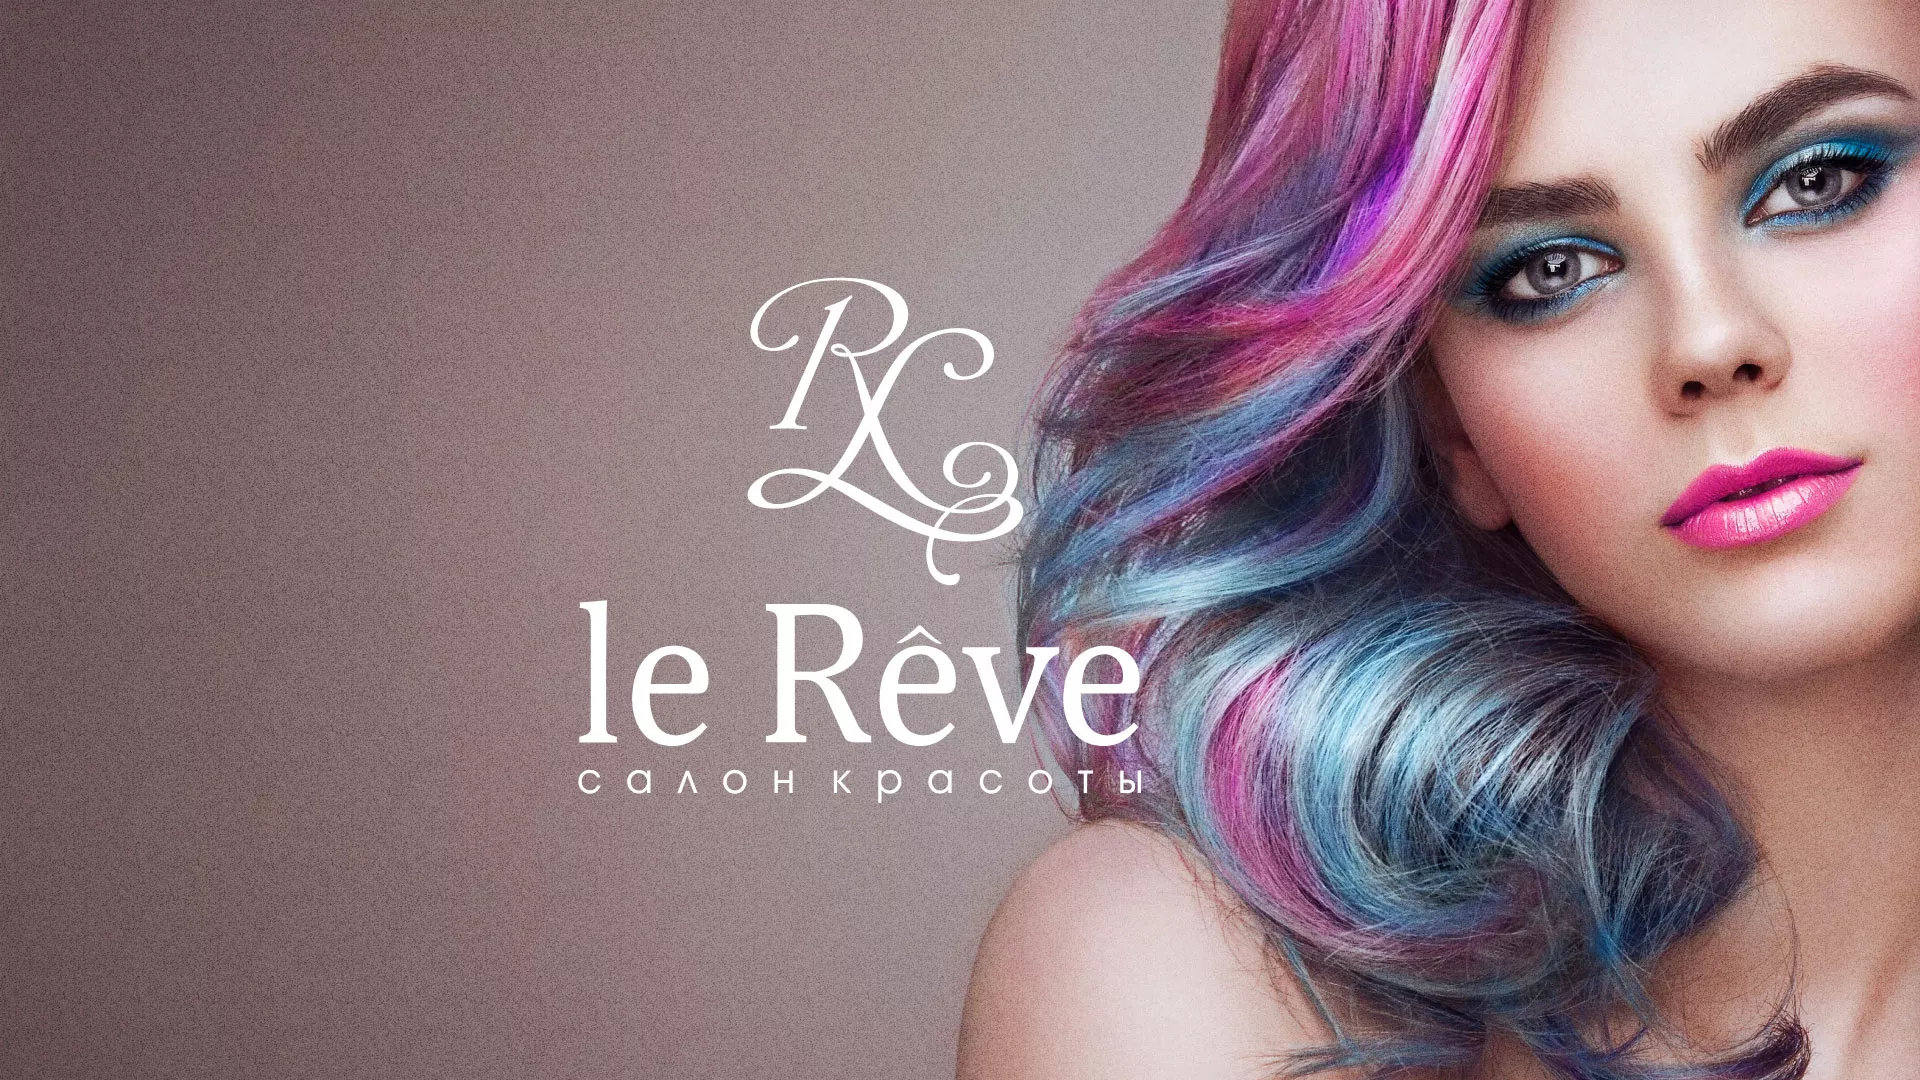 Создание сайта для салона красоты «Le Reve» в Людиново